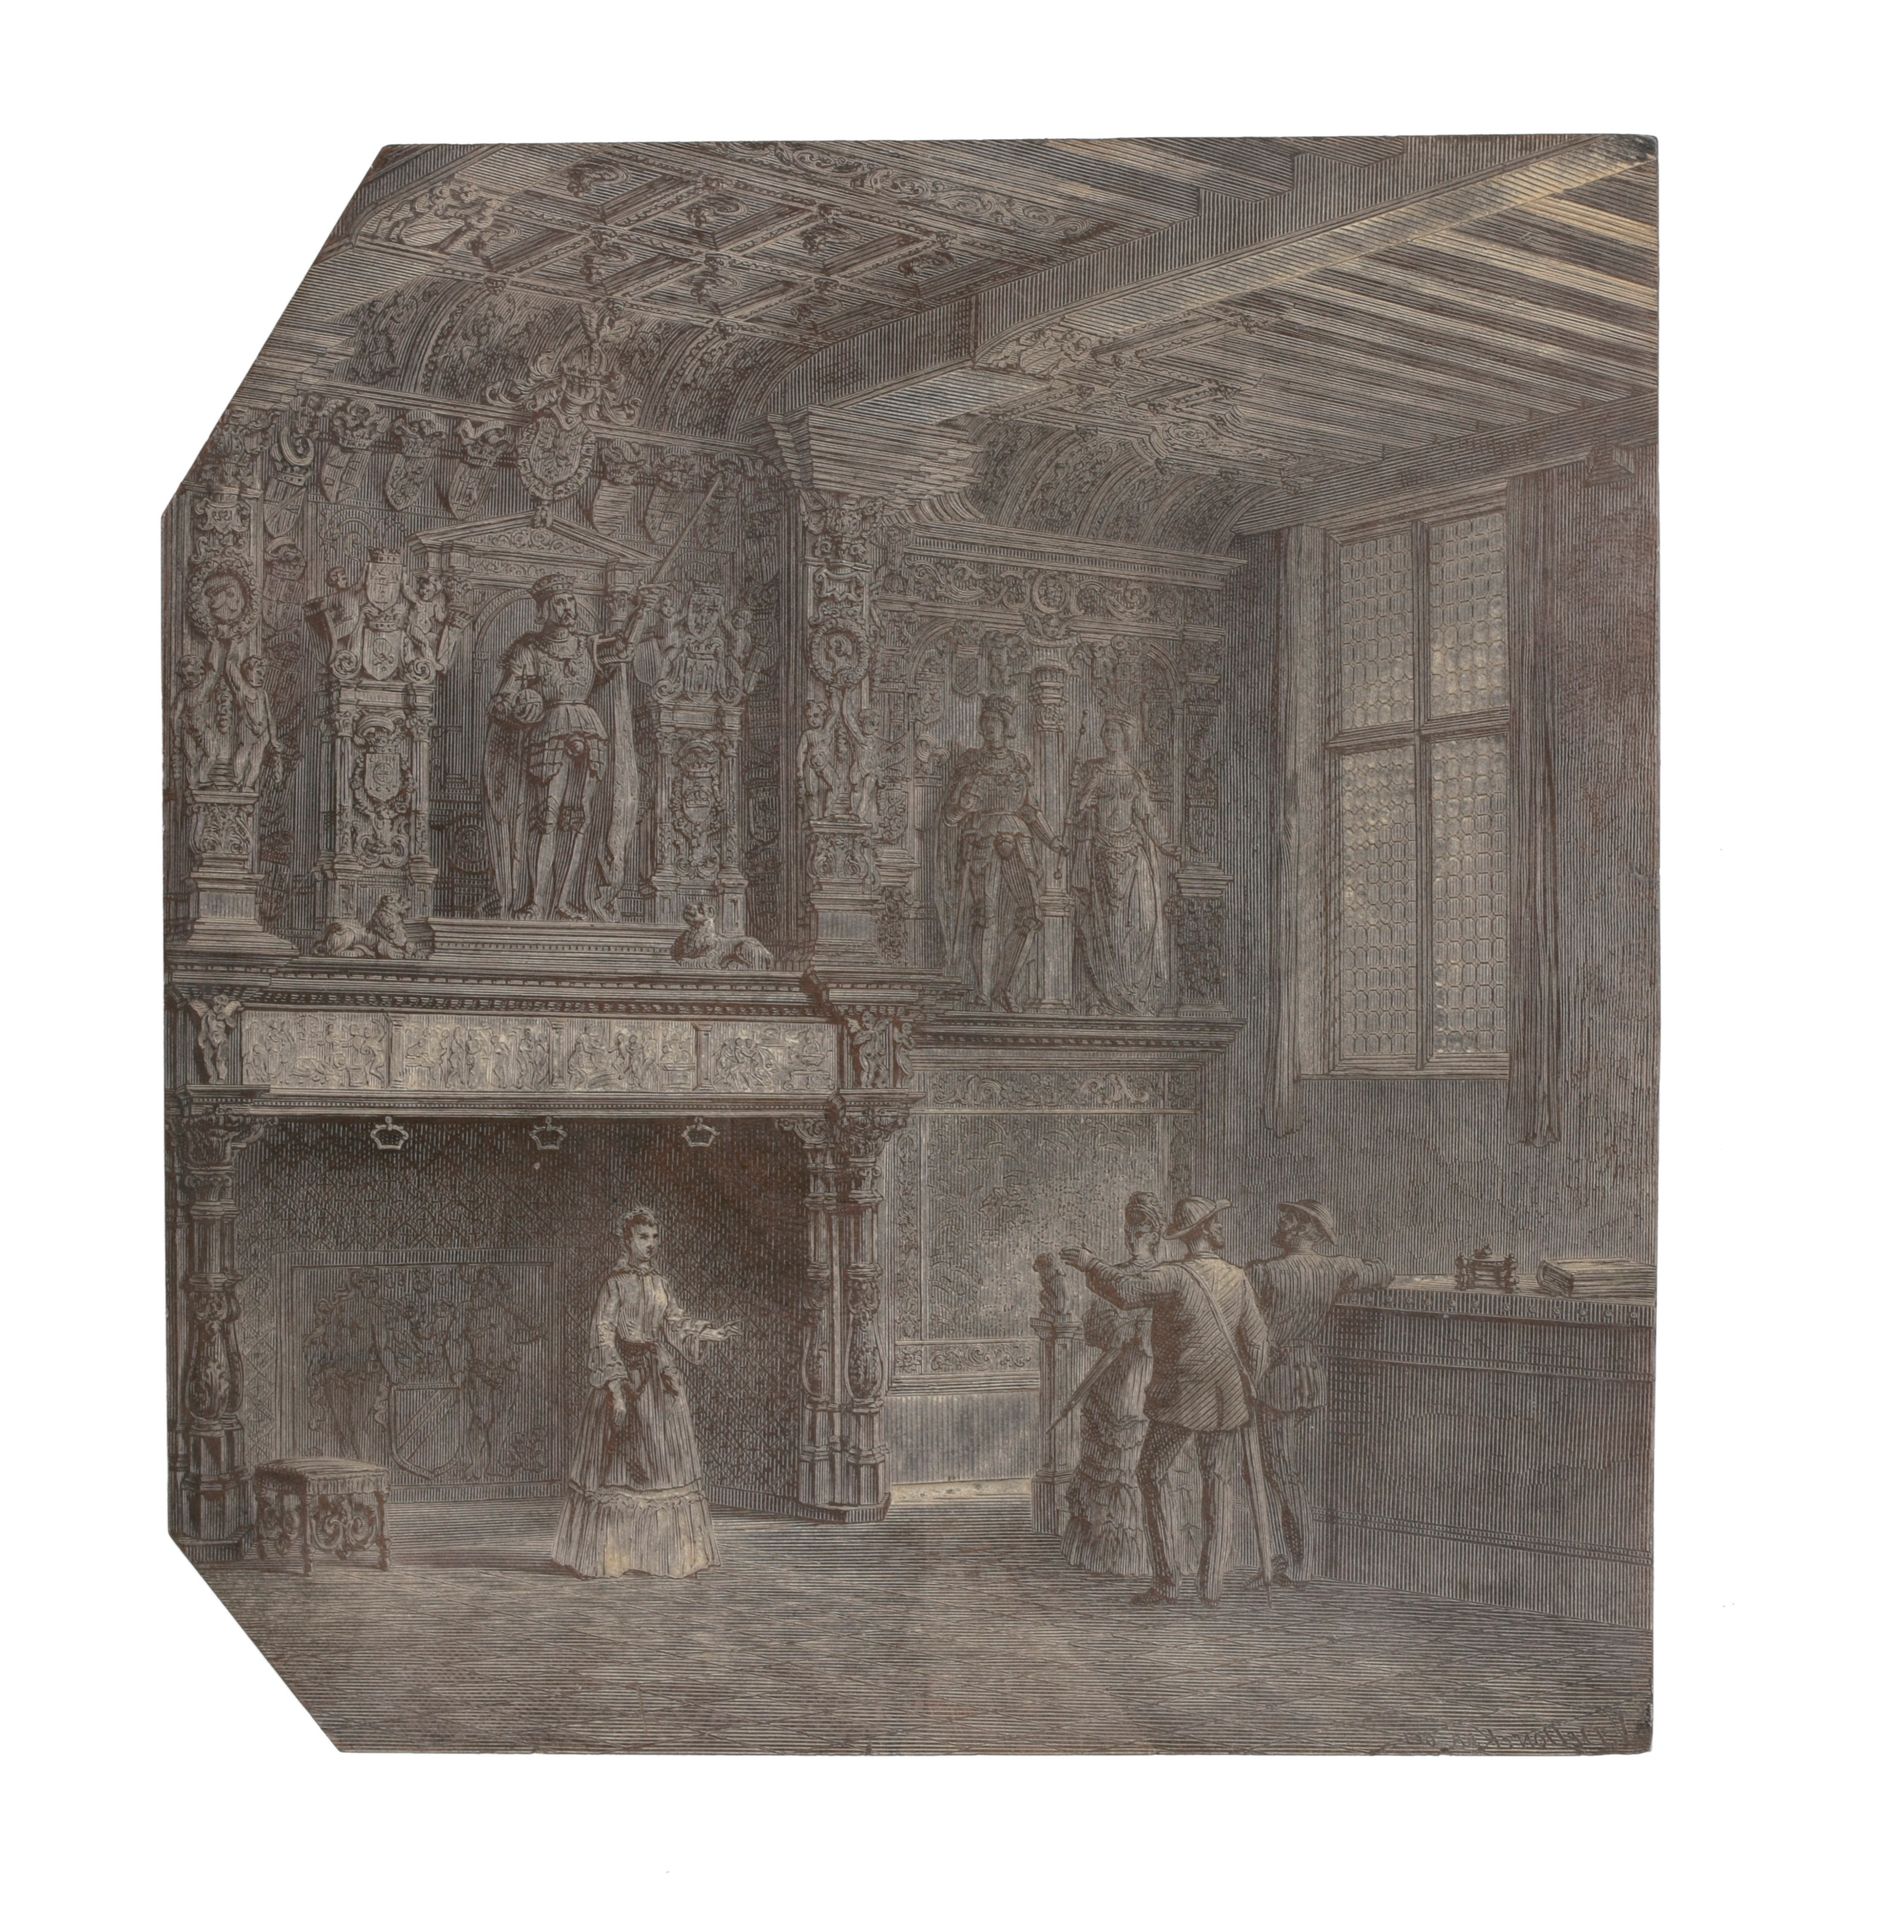 [Brugge] Houtblok met 'Schouw van het Brugse Vrije', c. 1850

Getekend'V.De Donc&hellip;